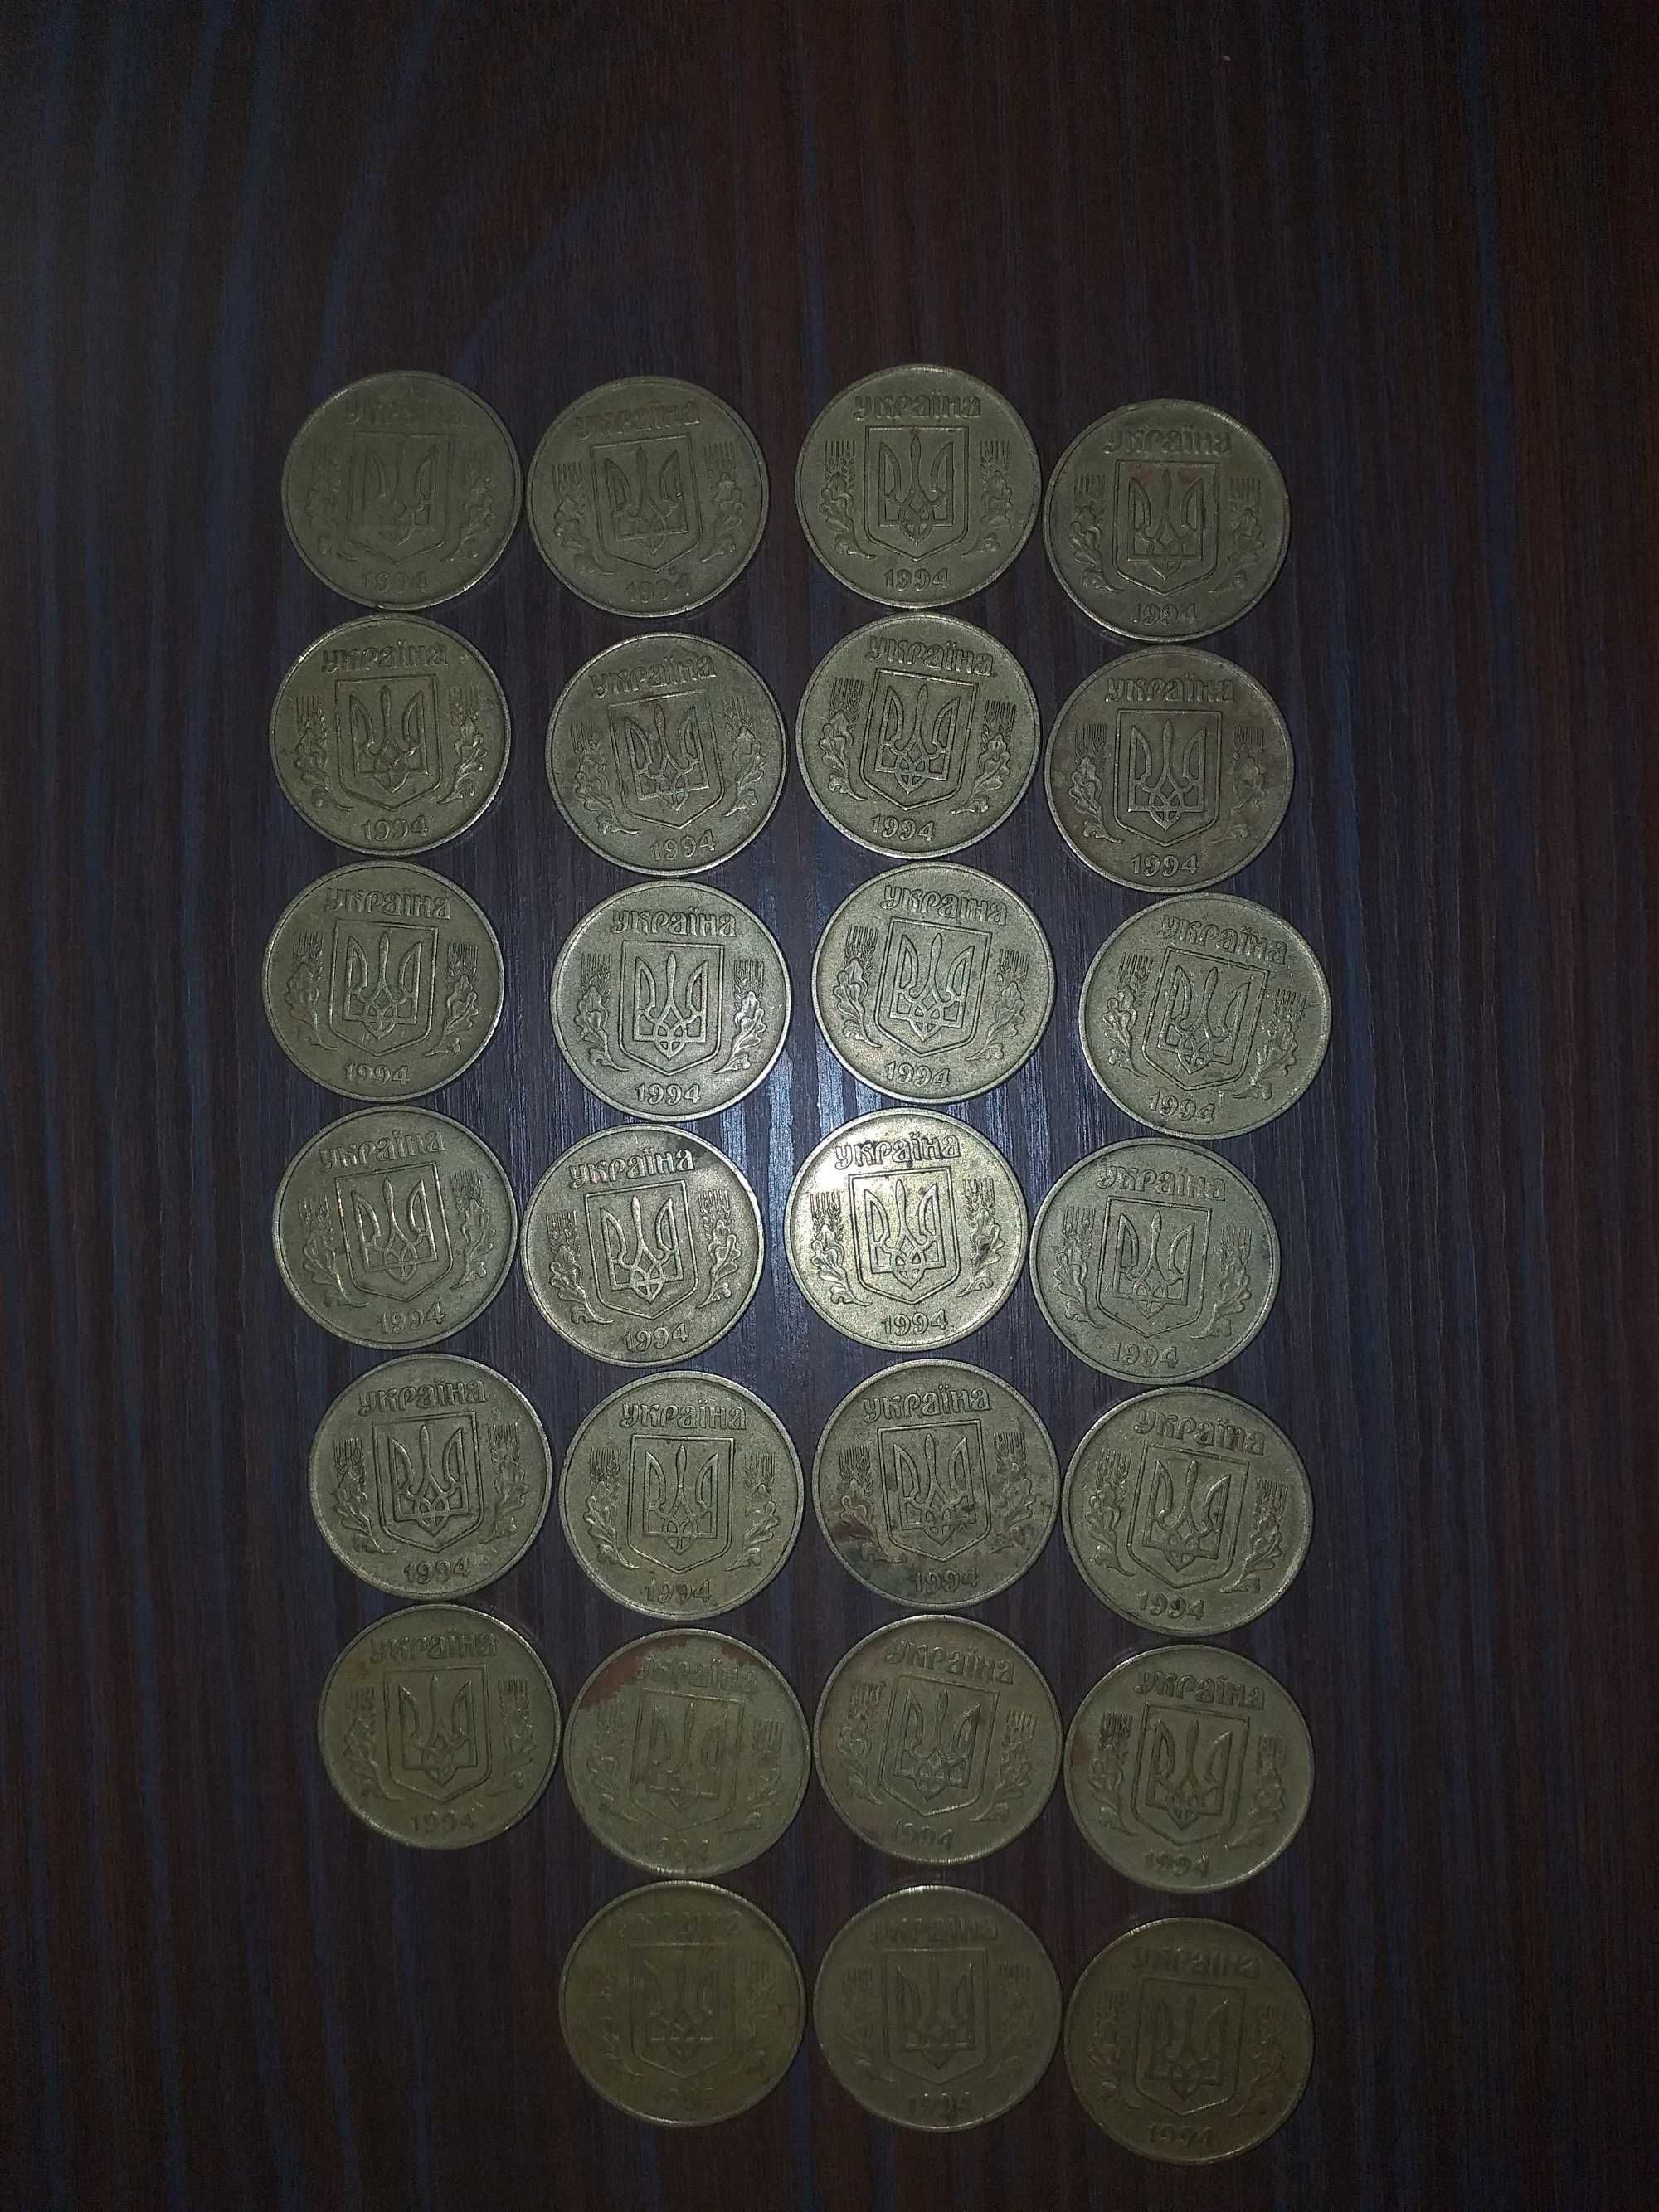 монети 1992року 1994 року 50 копійок різні